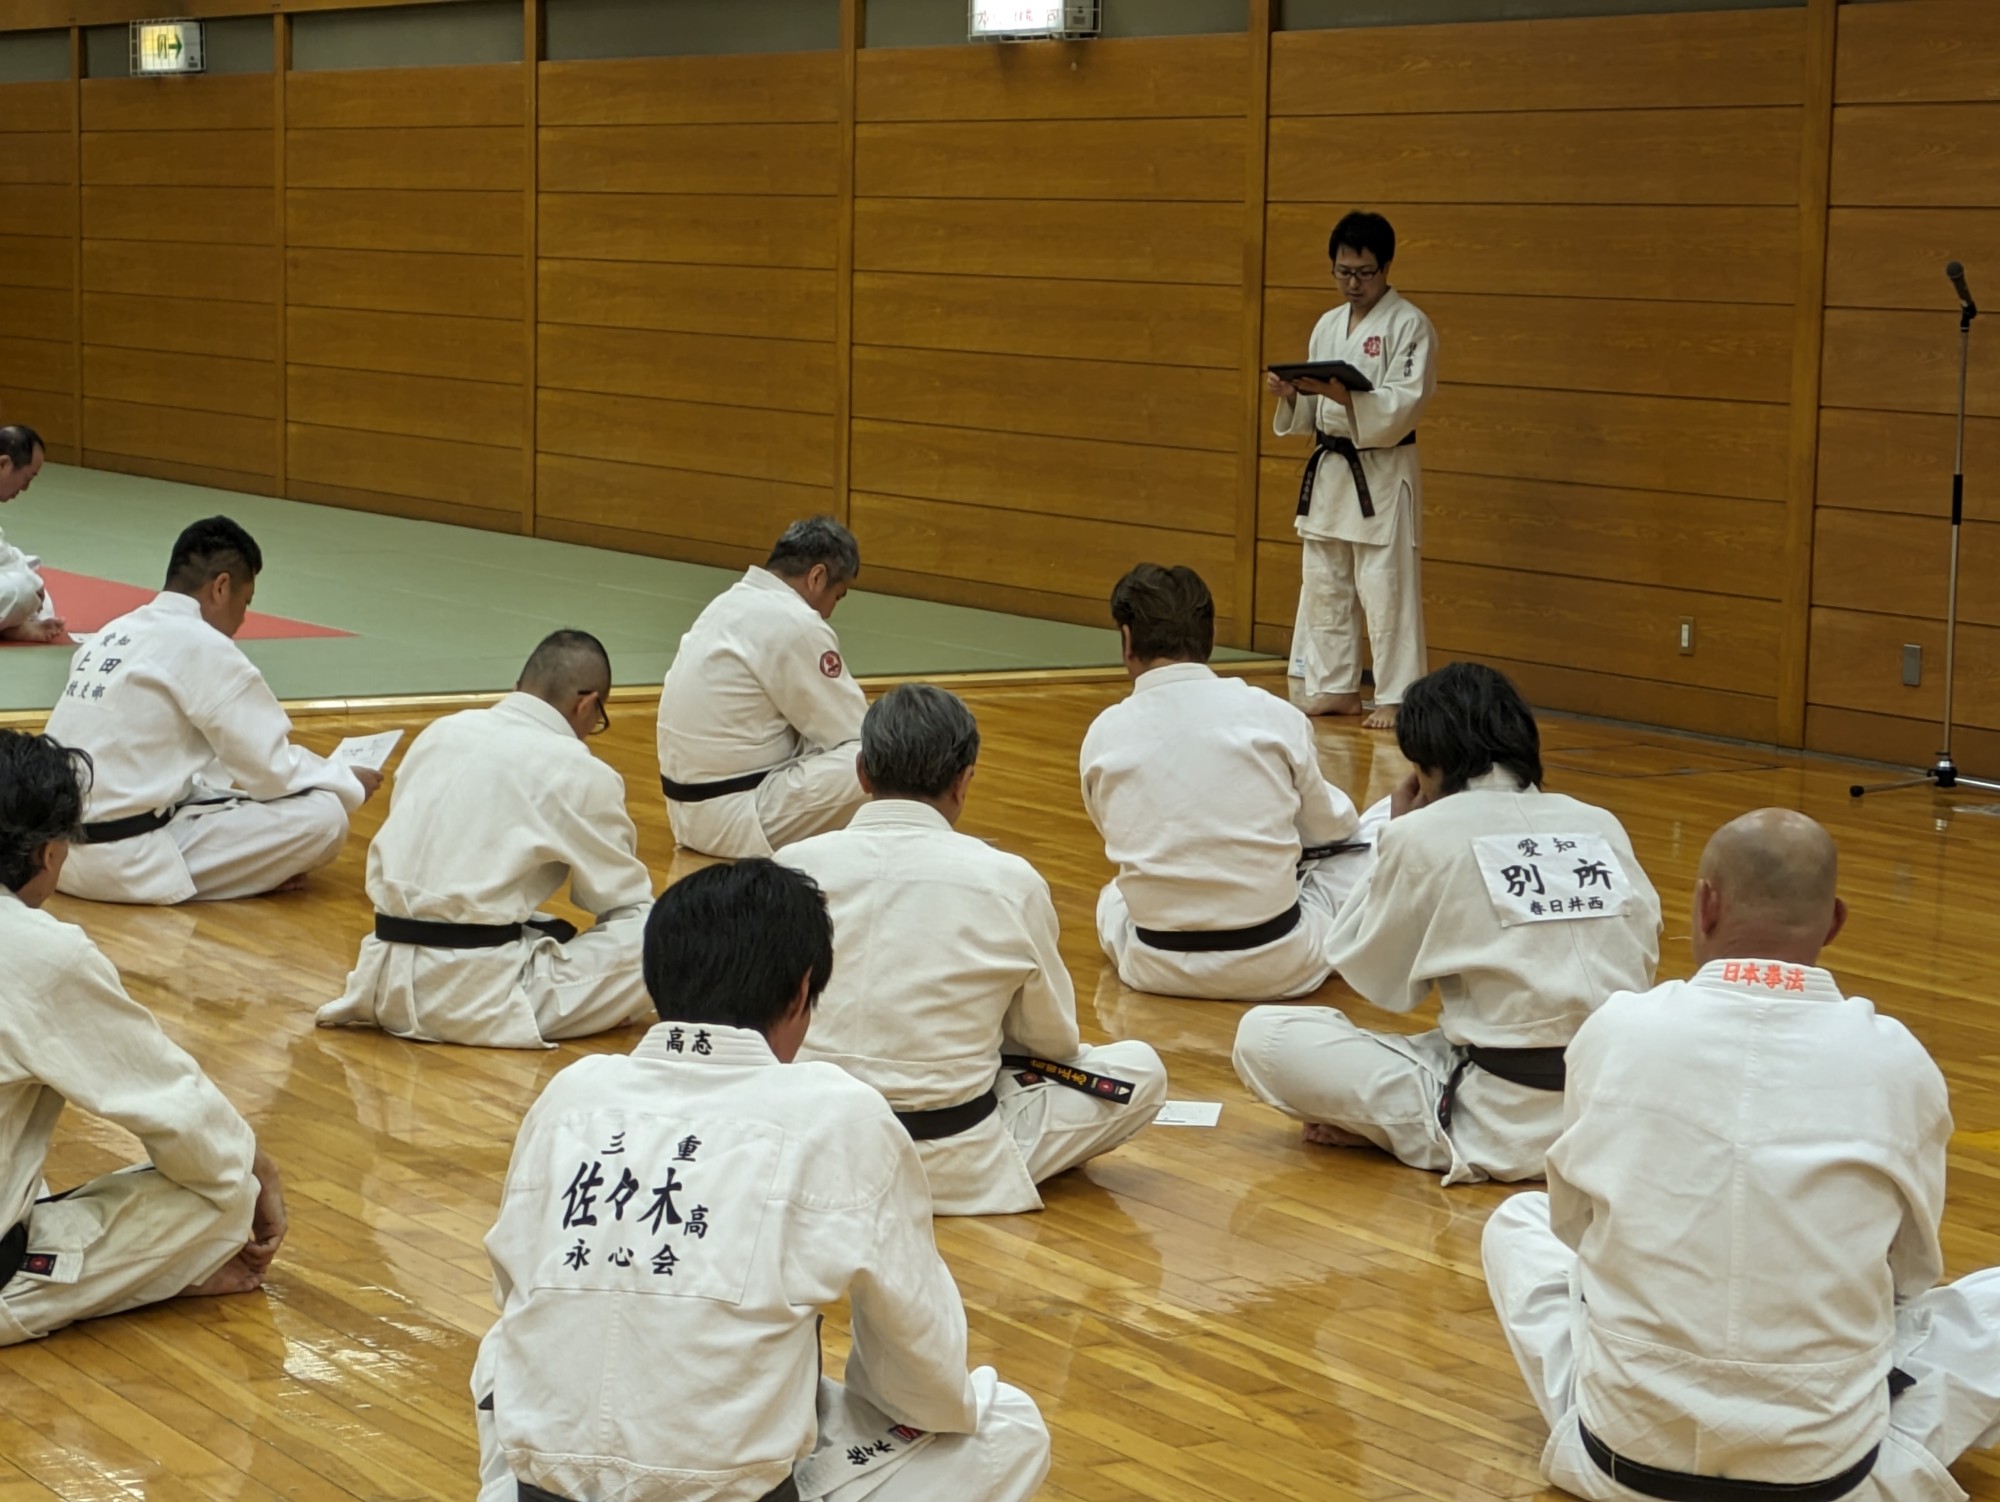 日本拳法中部日本本部昇段級審査員認定講習会で本学卒業生が講習会講師を務めました。